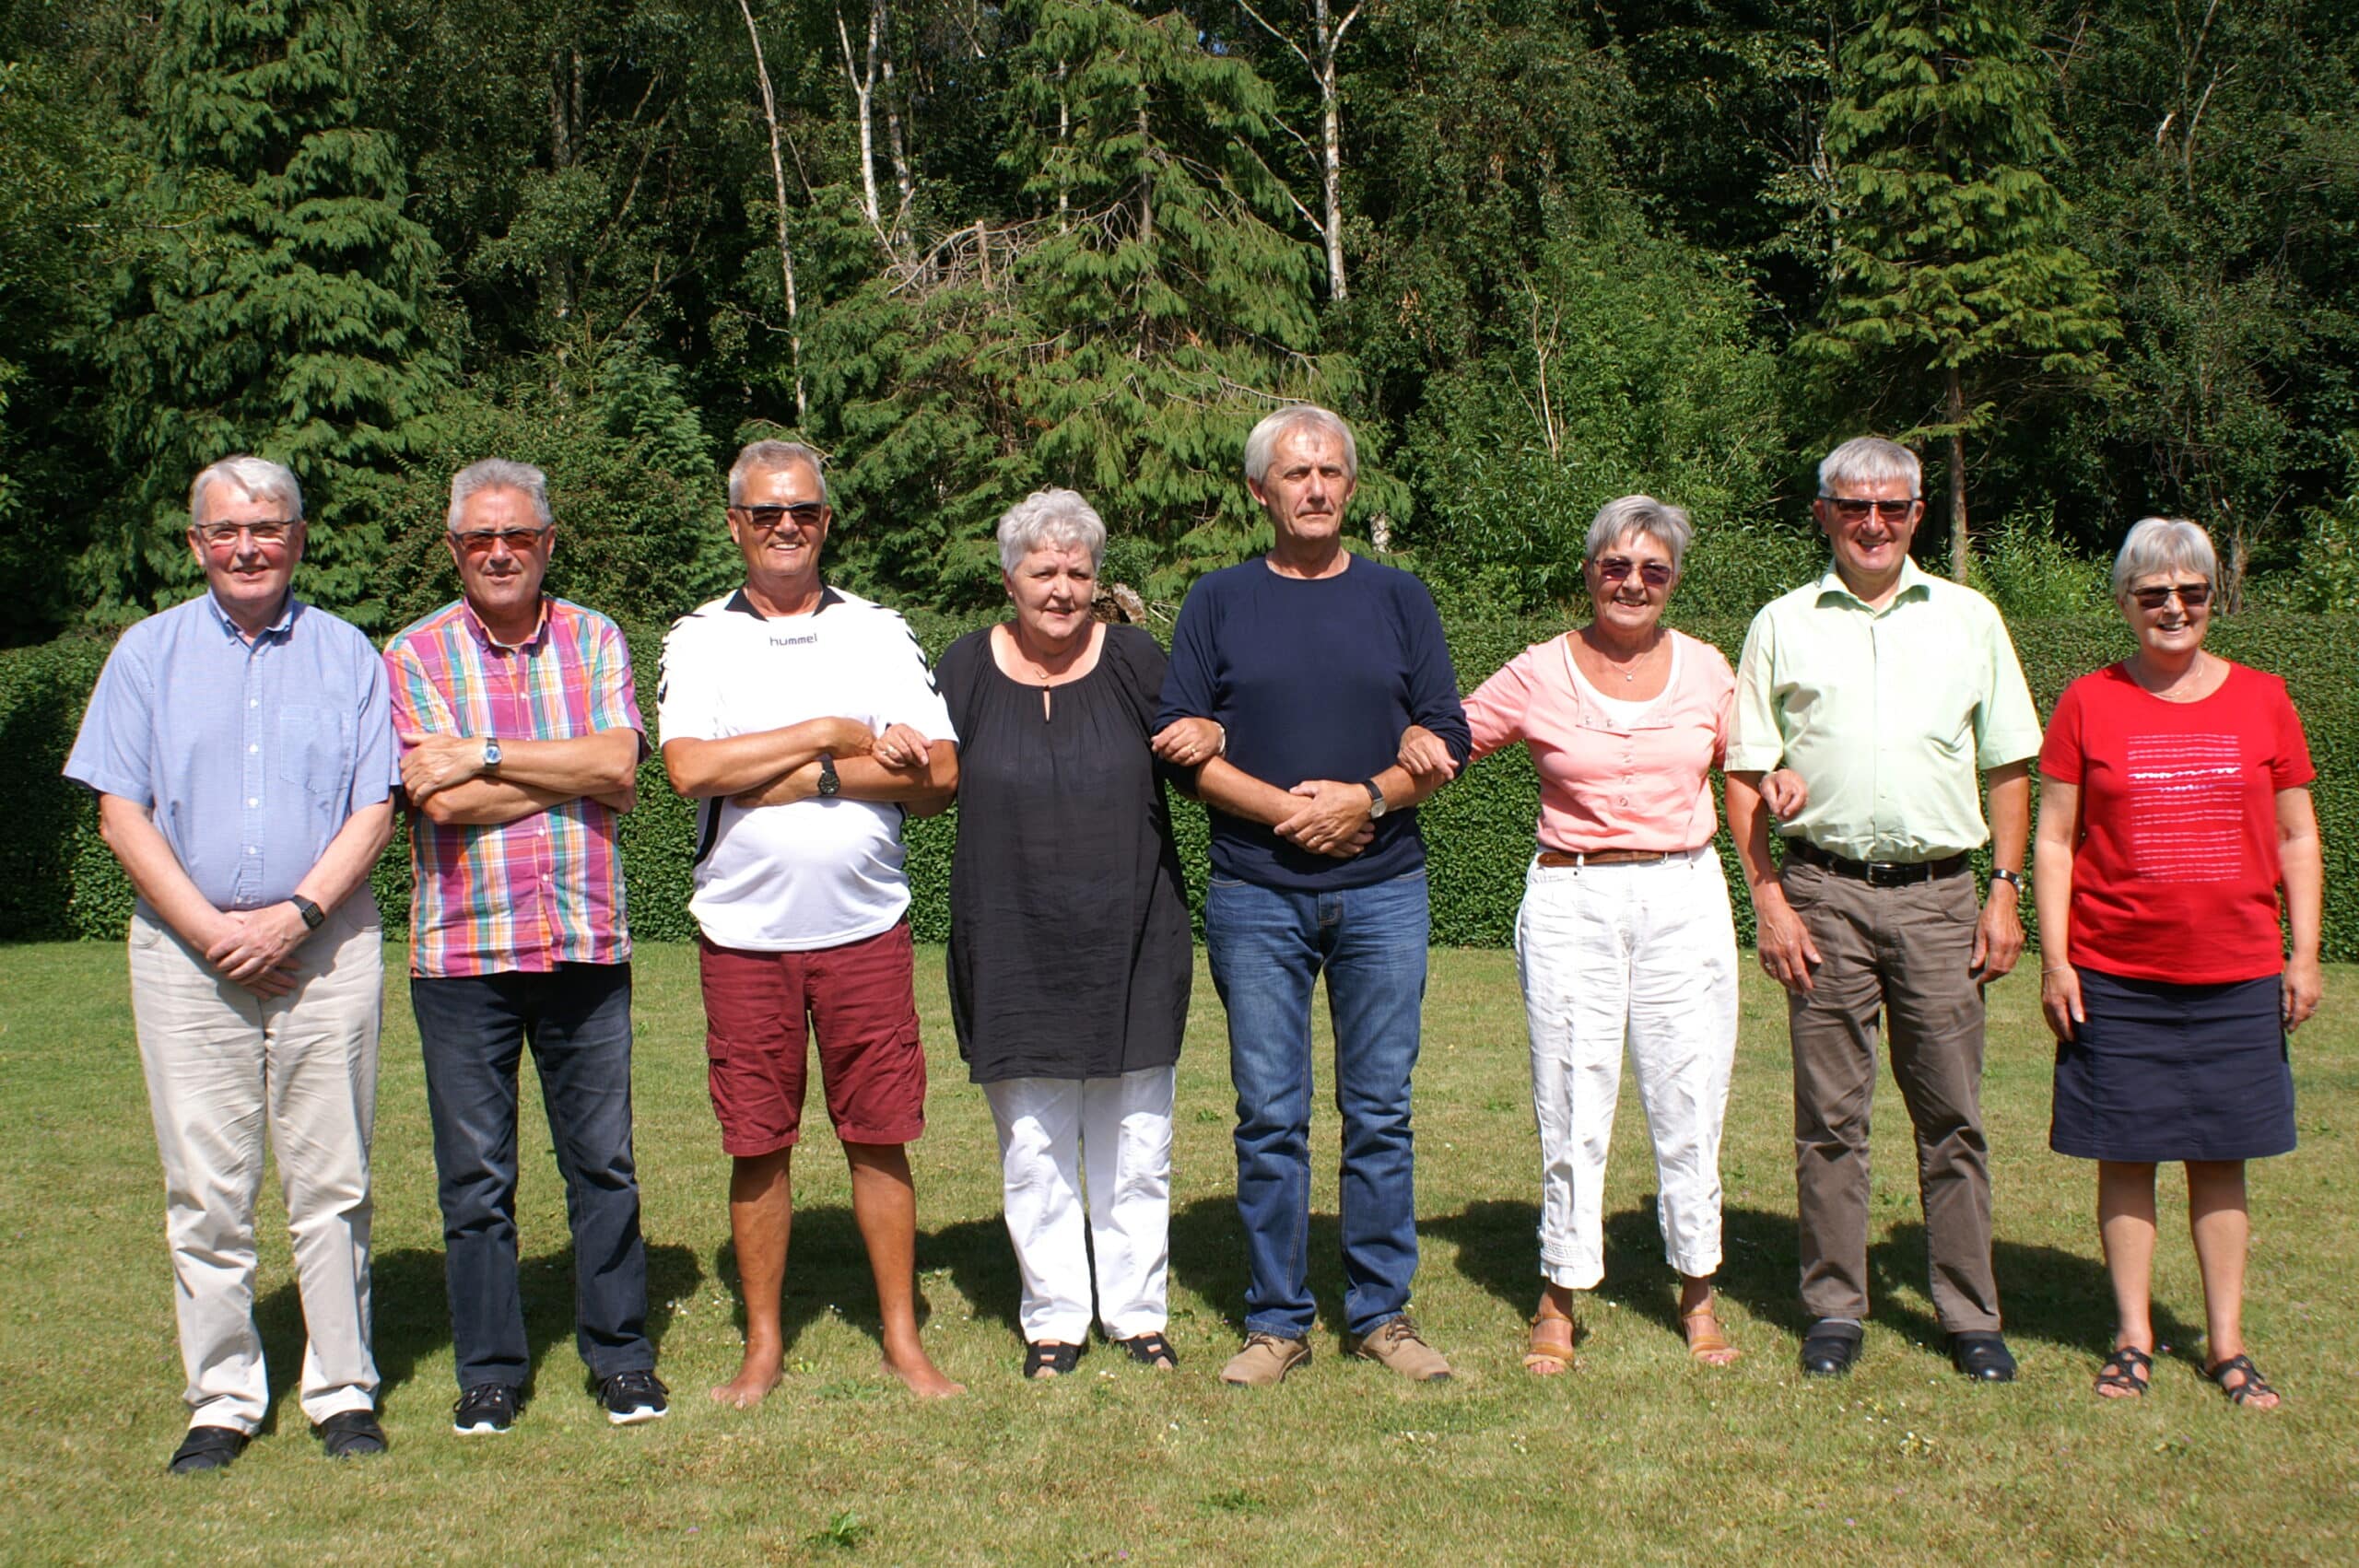 Per og hans 7 søskende, i aldersrækkefølge. Per er den ældste og står yderst til venstre.